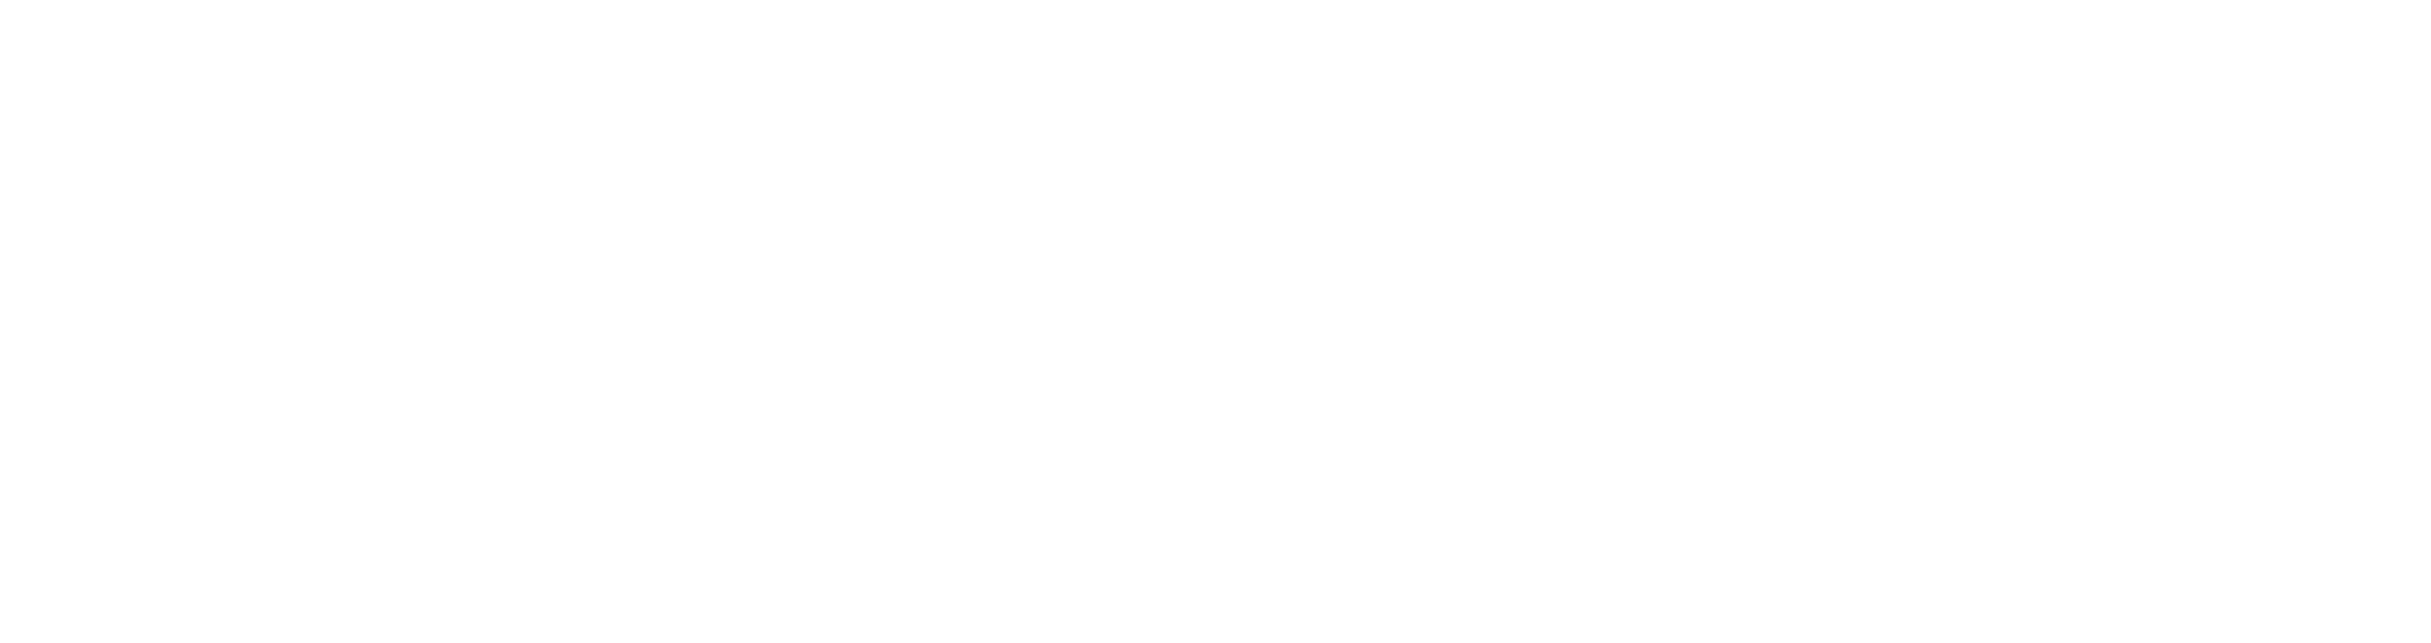 SkillPlan_Lockup-White.png